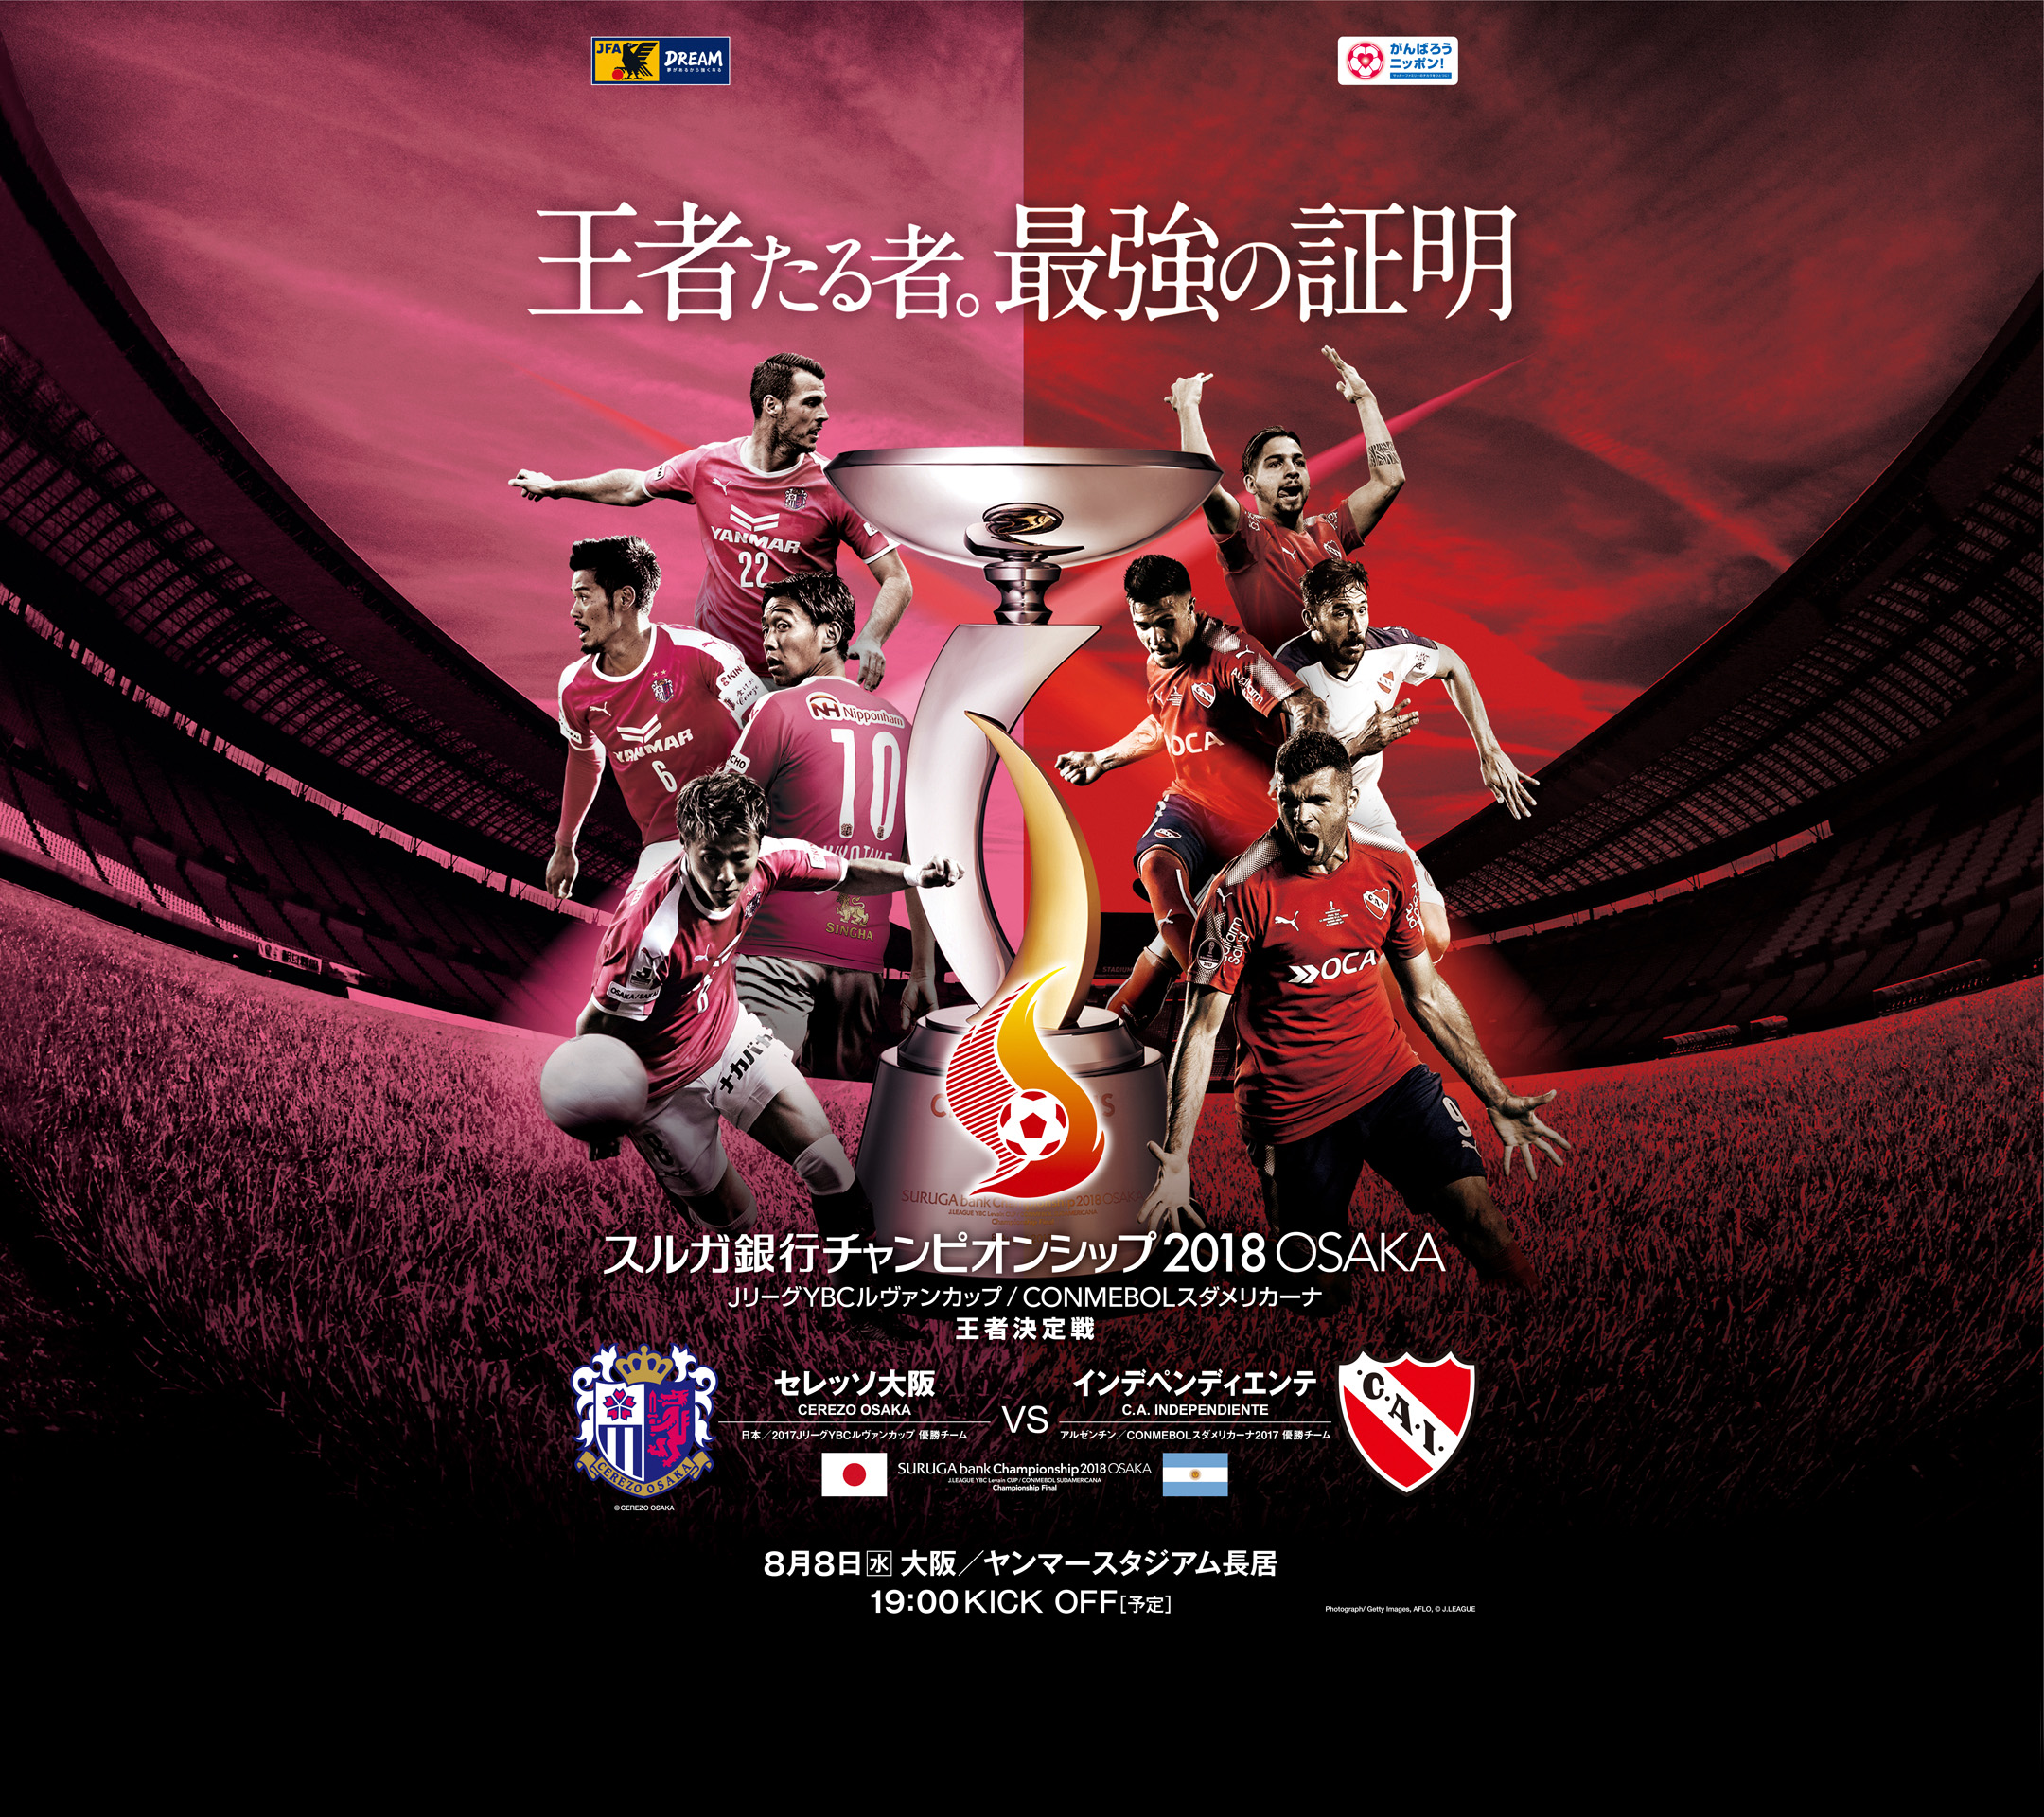 壁紙 ポスターダウンロード スルガ銀行チャンピオンシップ18 Osaka 日本サッカー協会